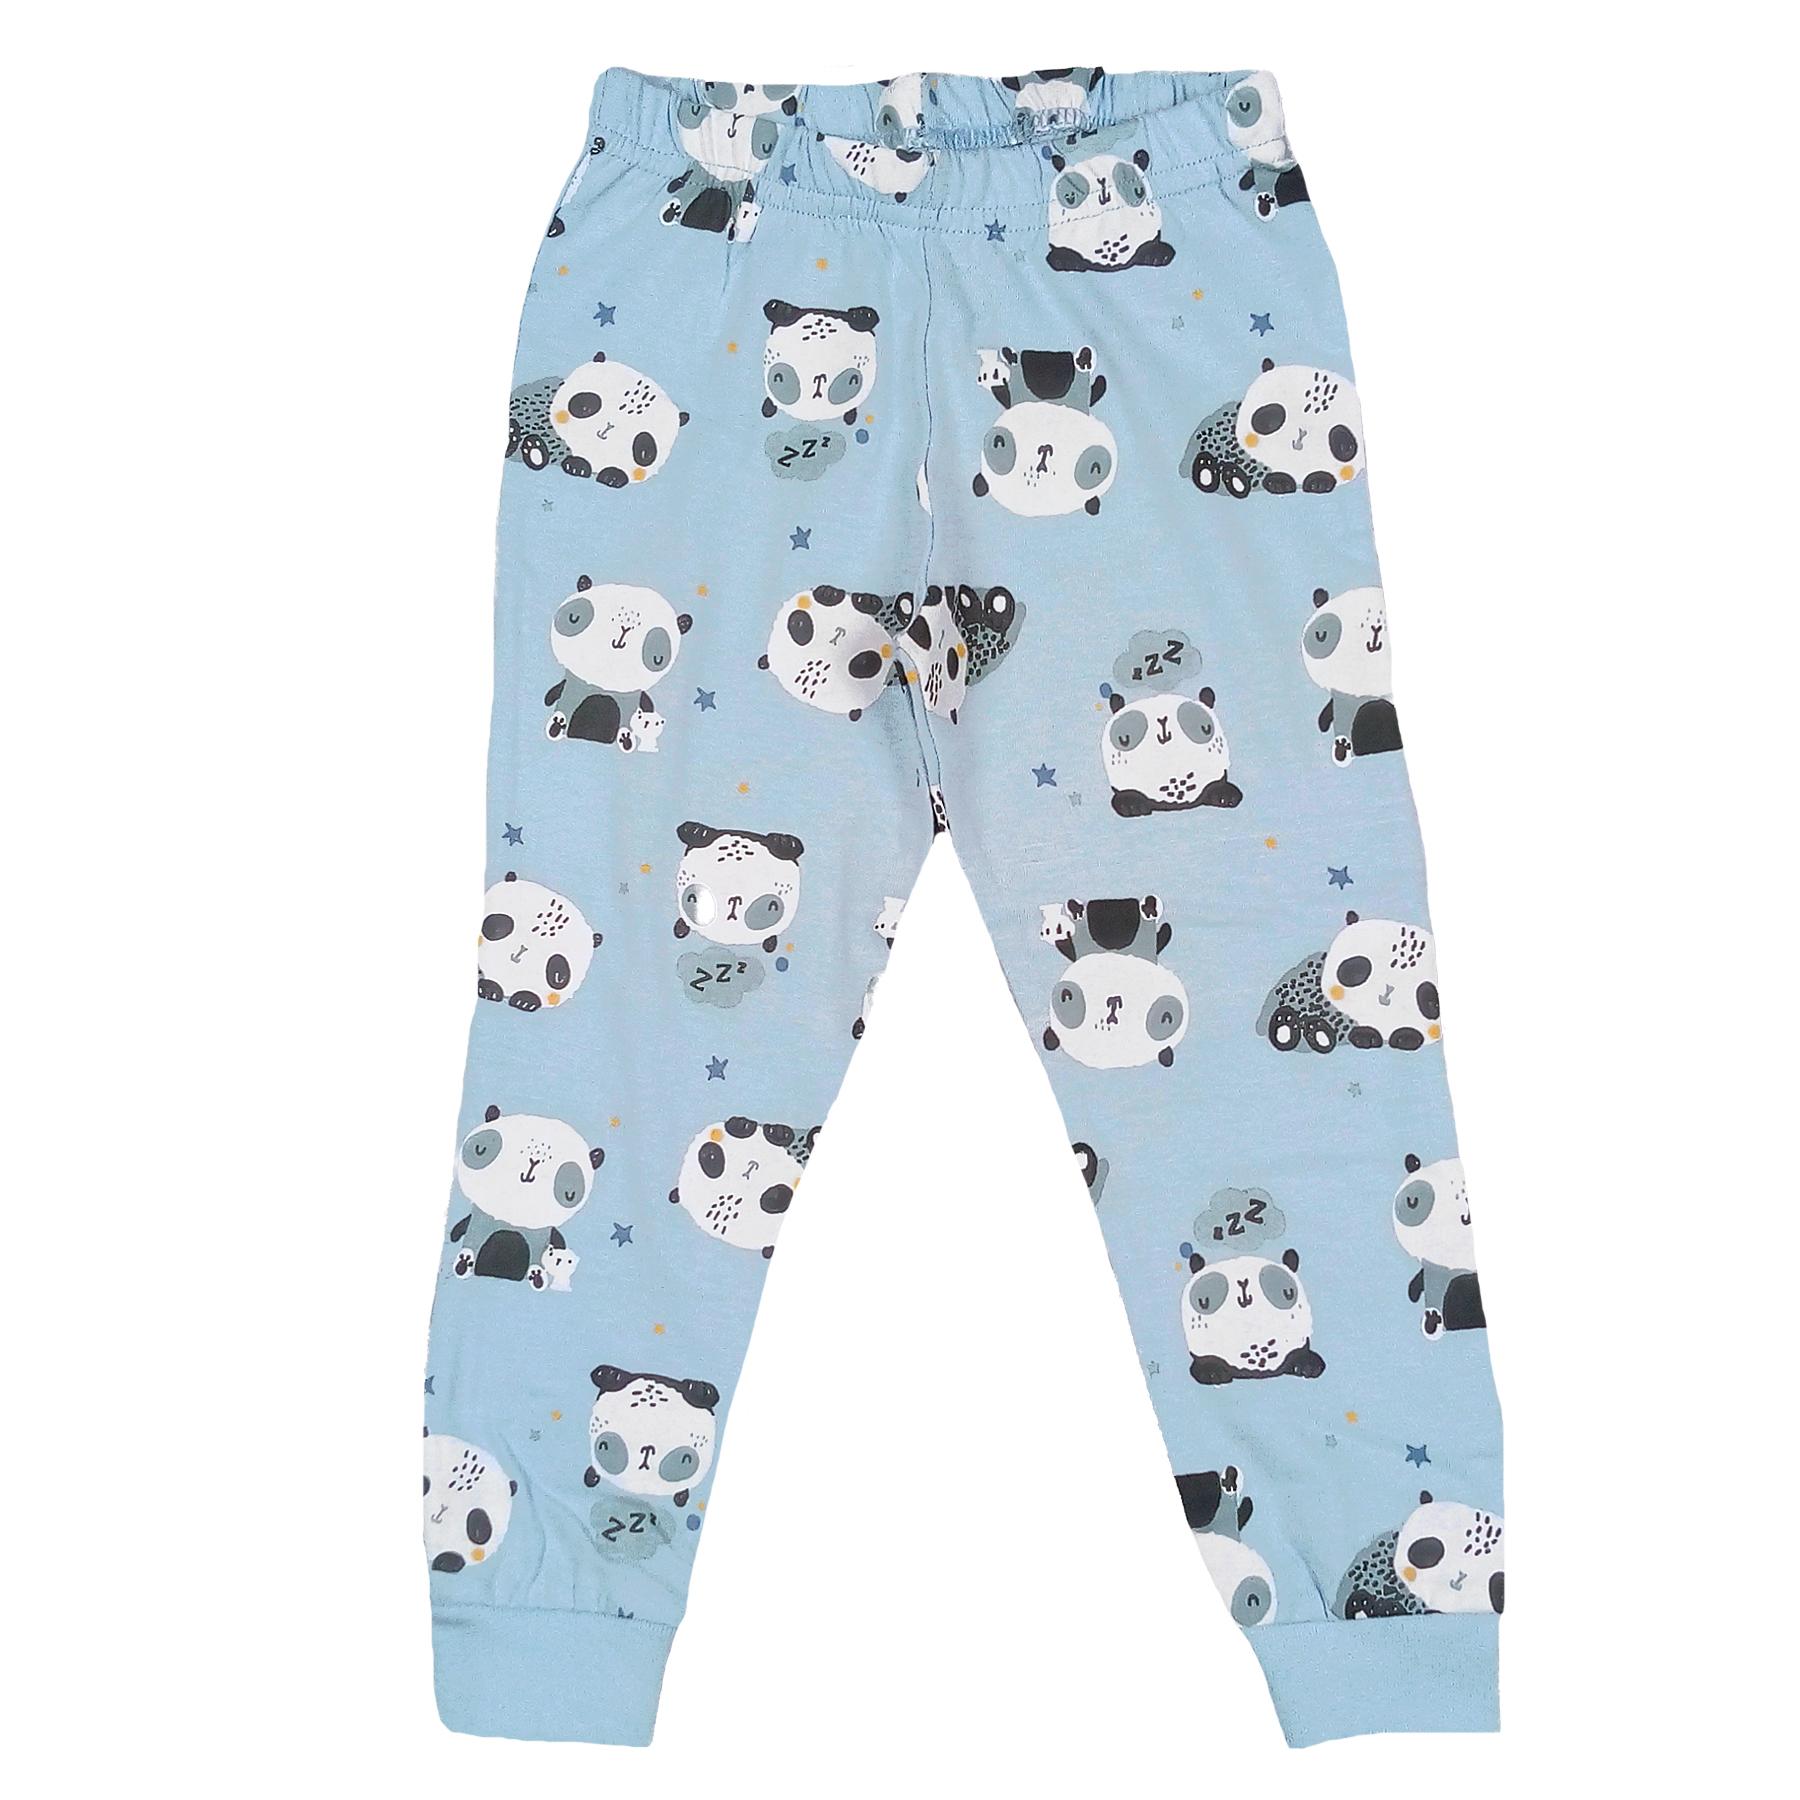 Jam Jam Sleepy Panda Cotton Pyjama Bottoms